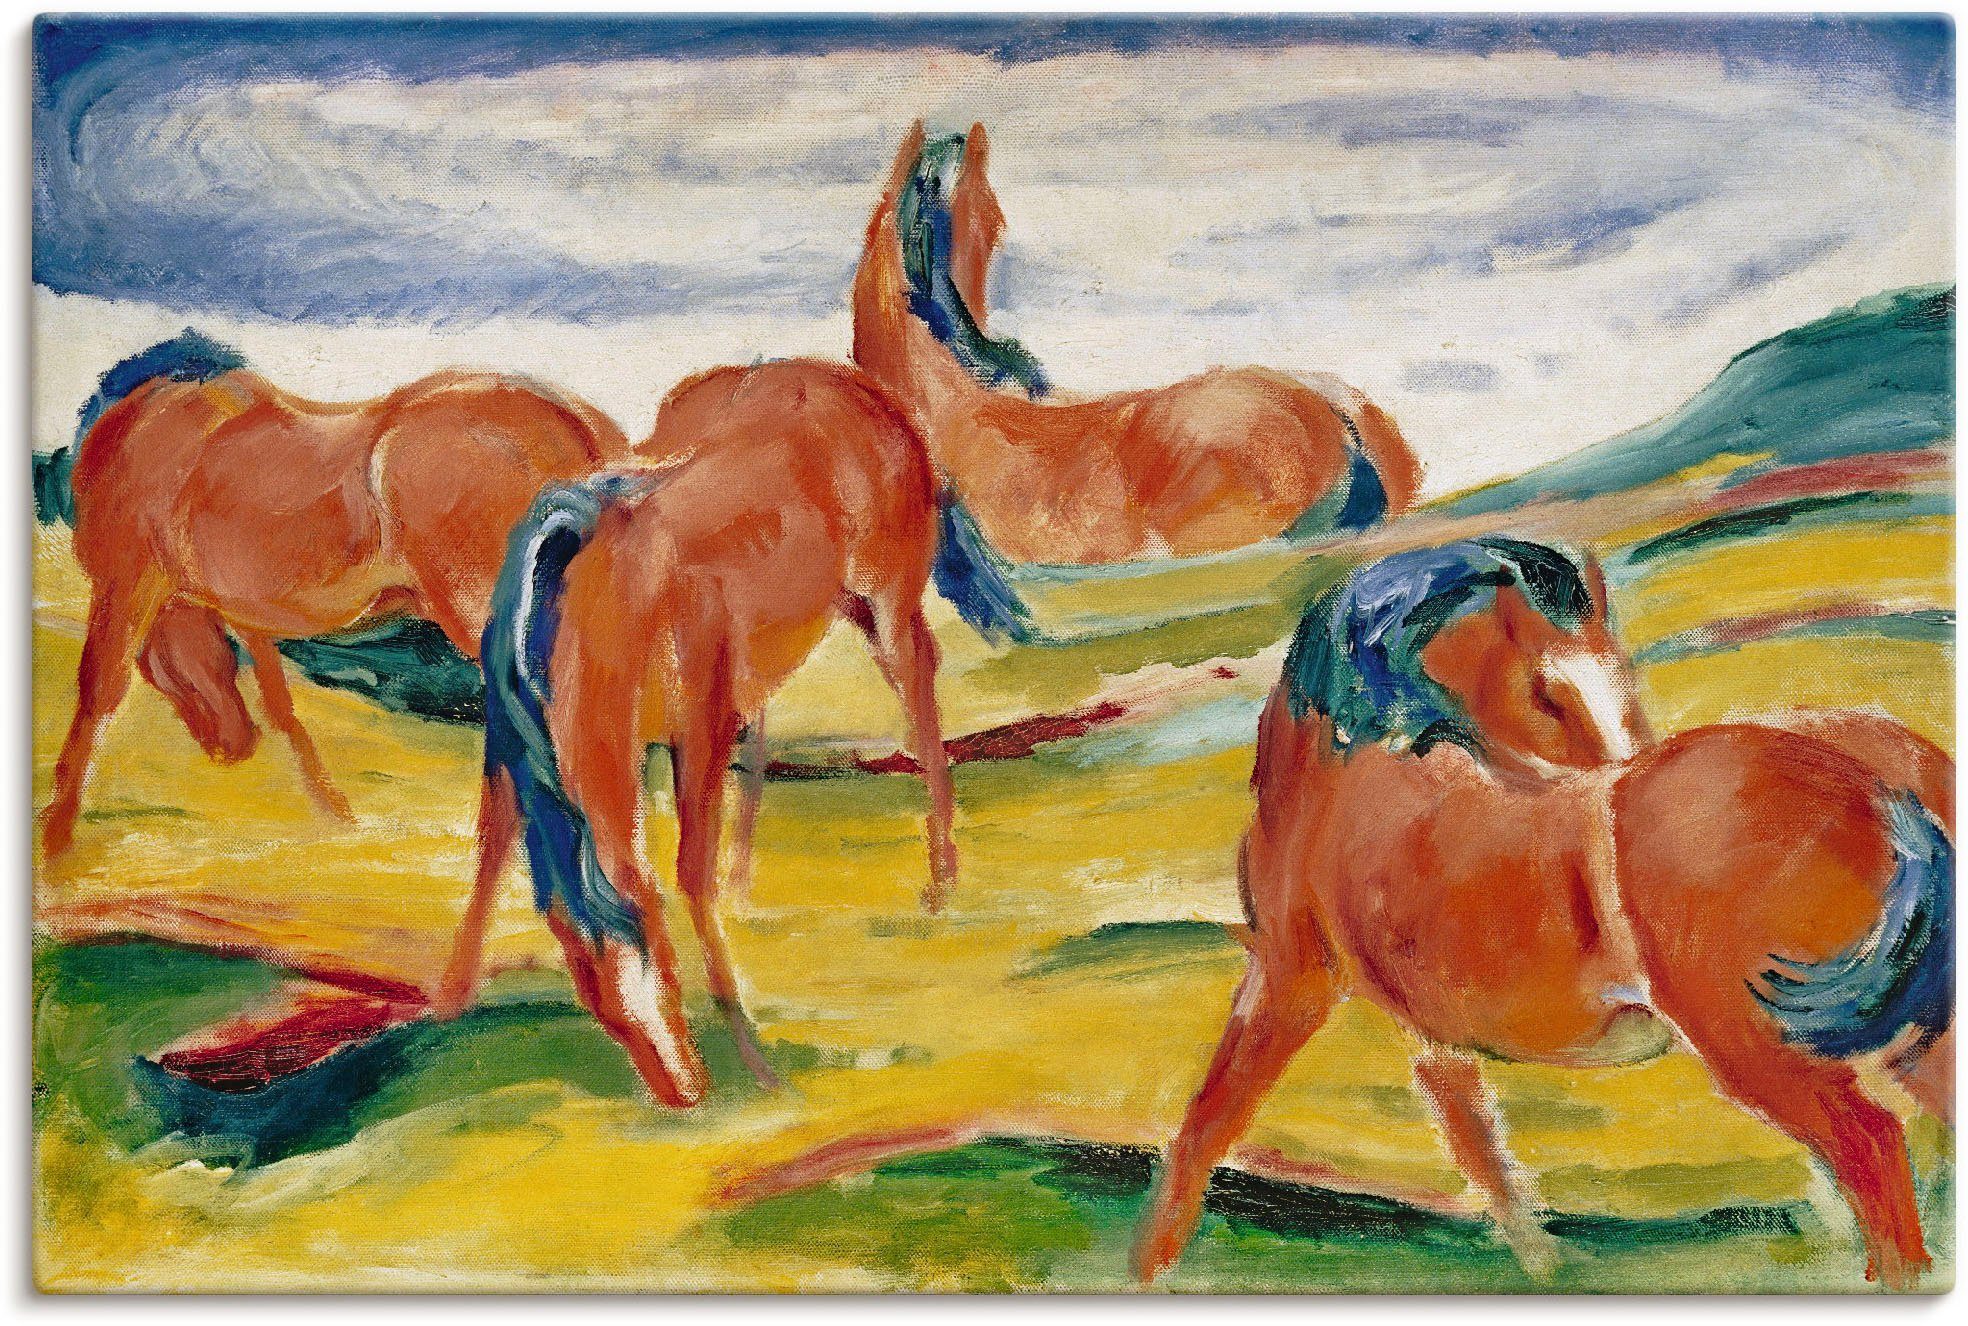 Artland Artprint Grazende paarden III. 1910 in vele afmetingen & productsoorten - artprint van aluminium / artprint voor buiten, artprint op linnen, poster, muursticker / wandfolie